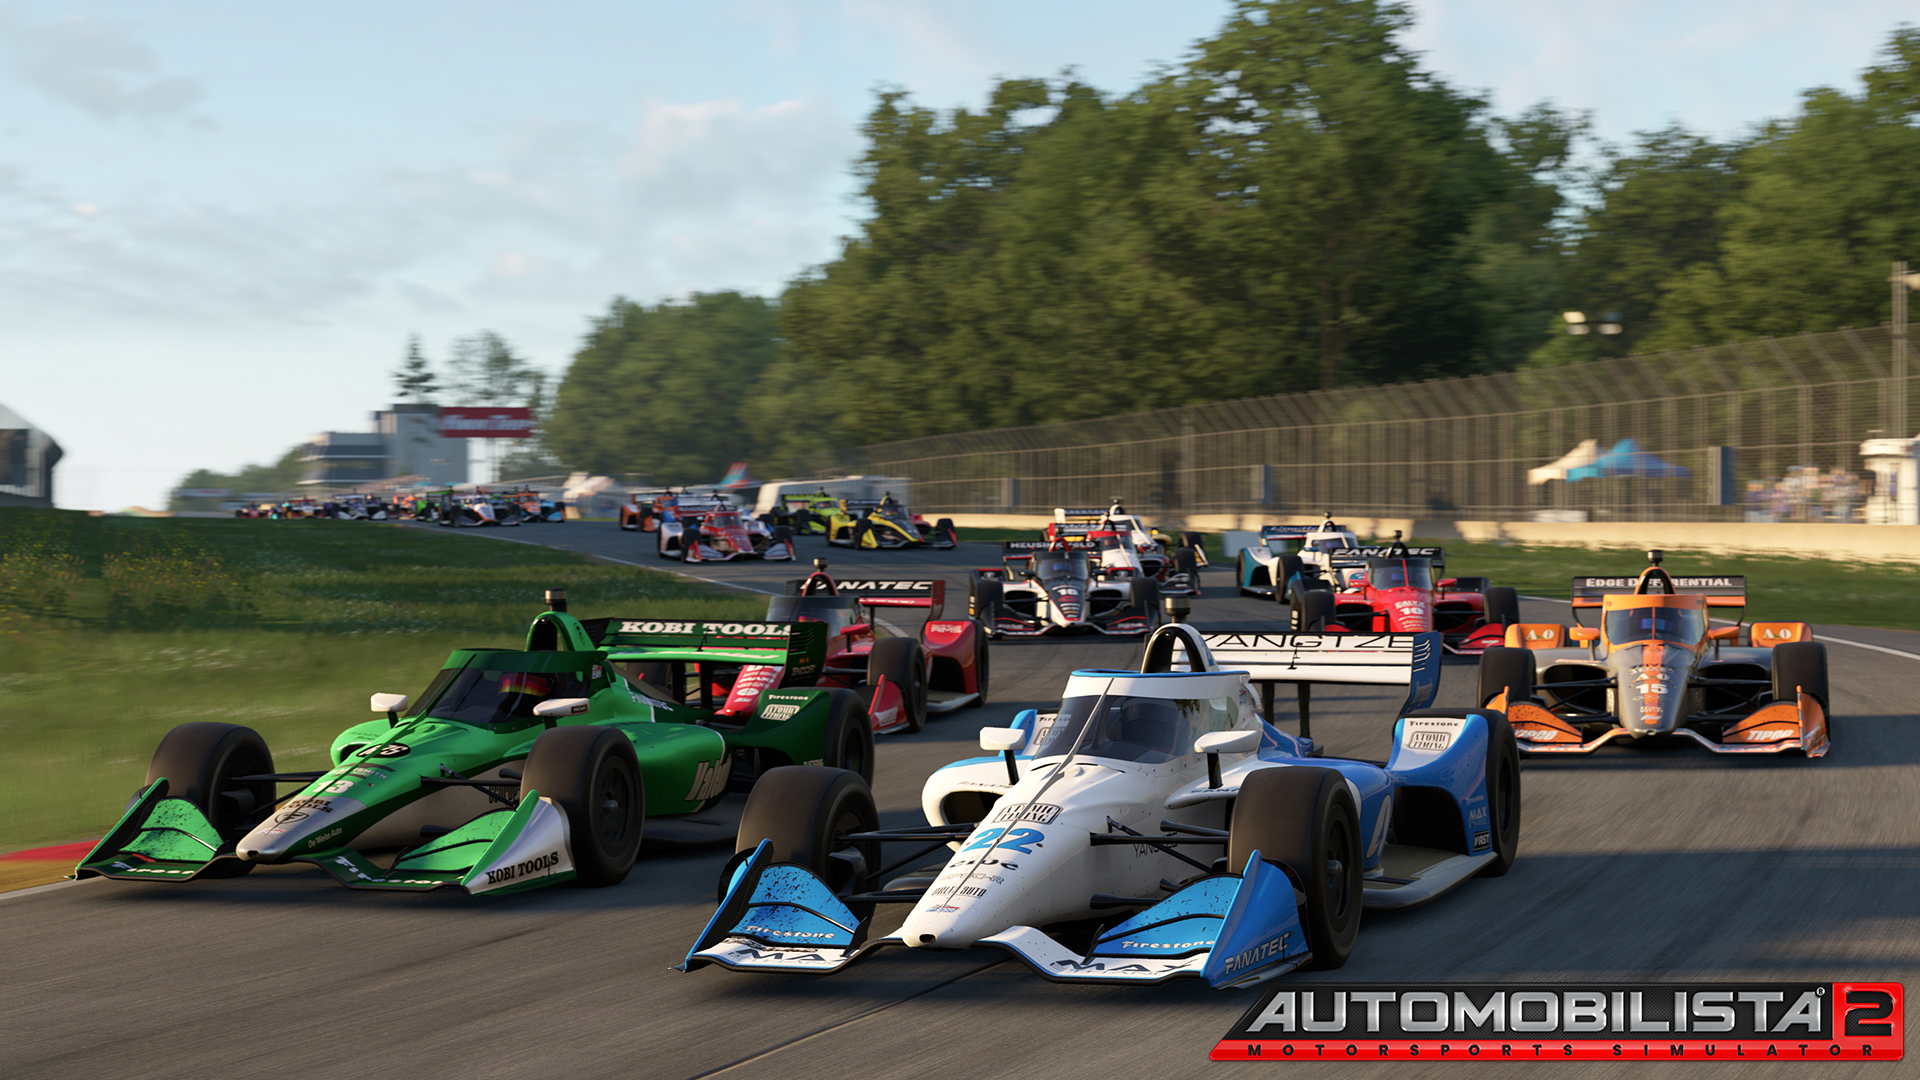 More information about "Automobilista 2: pubblicato il Development Update di Agosto"